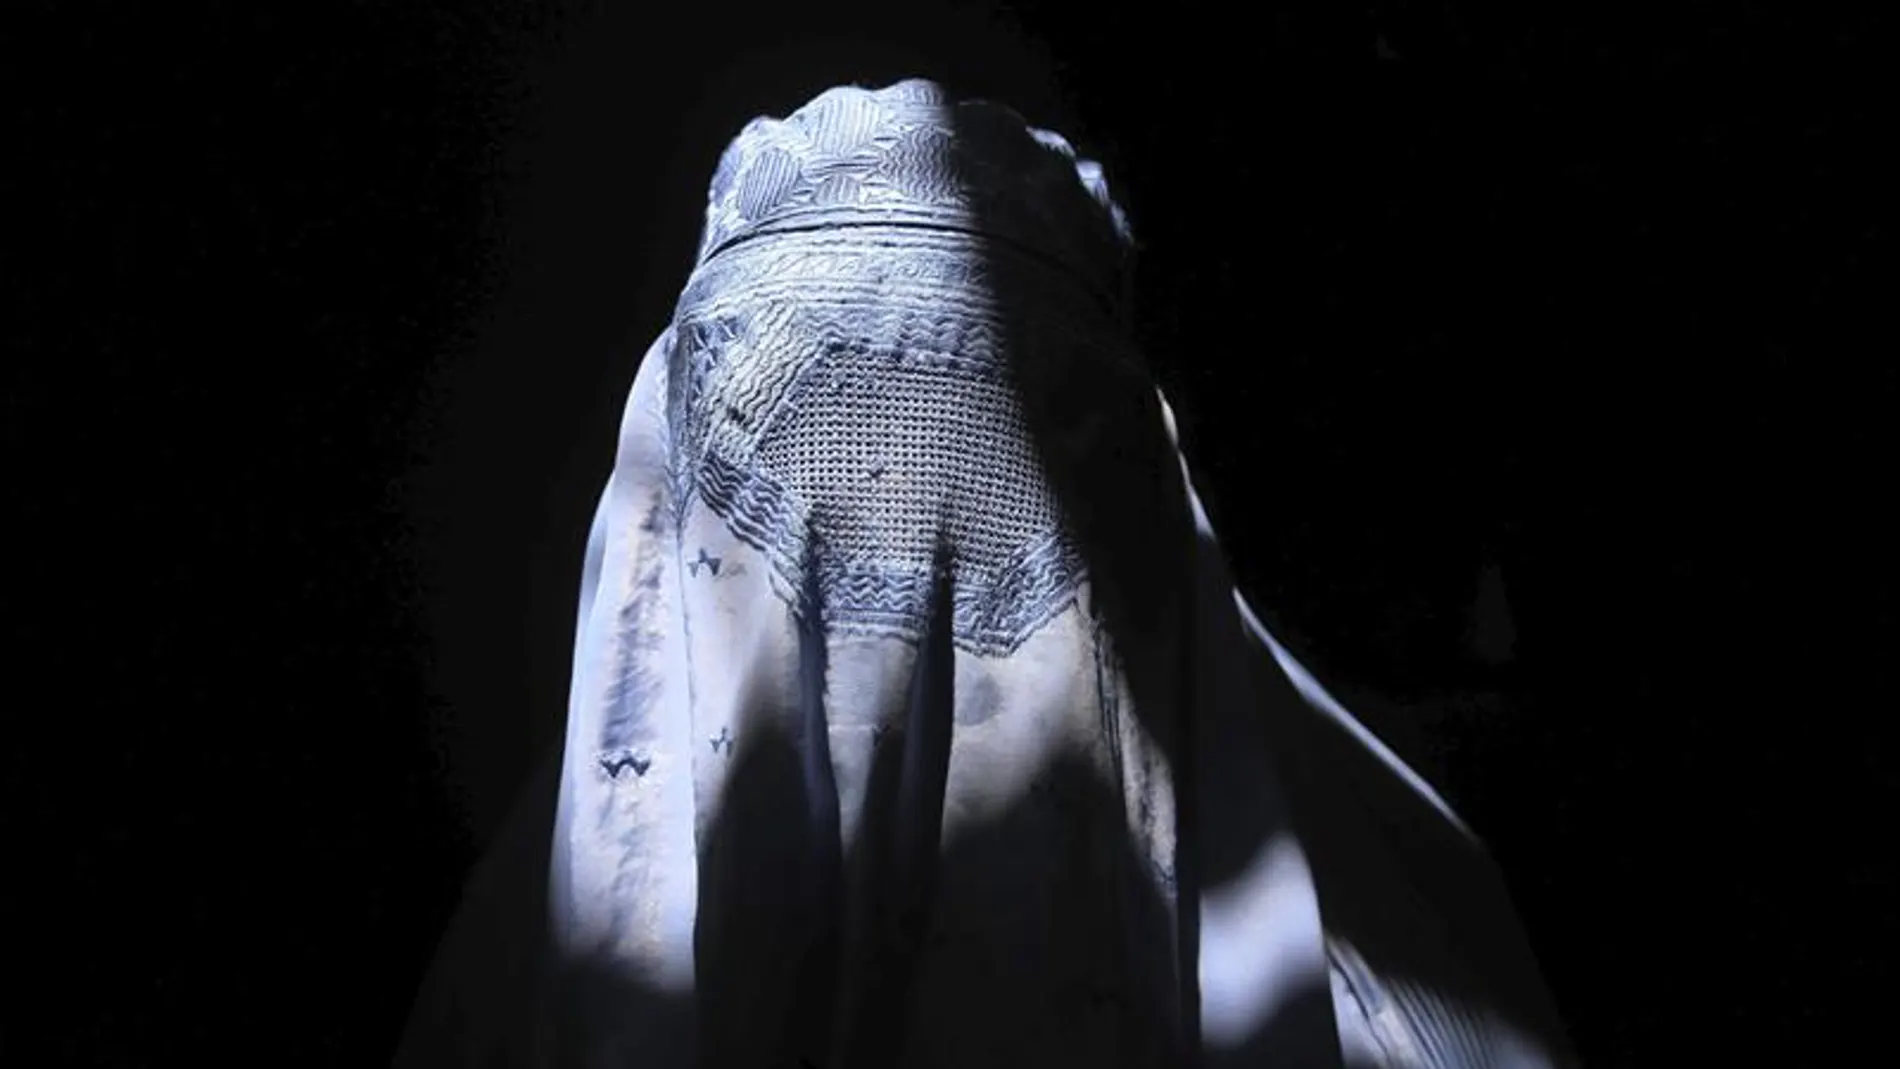 Una mujer vestida con un burka.